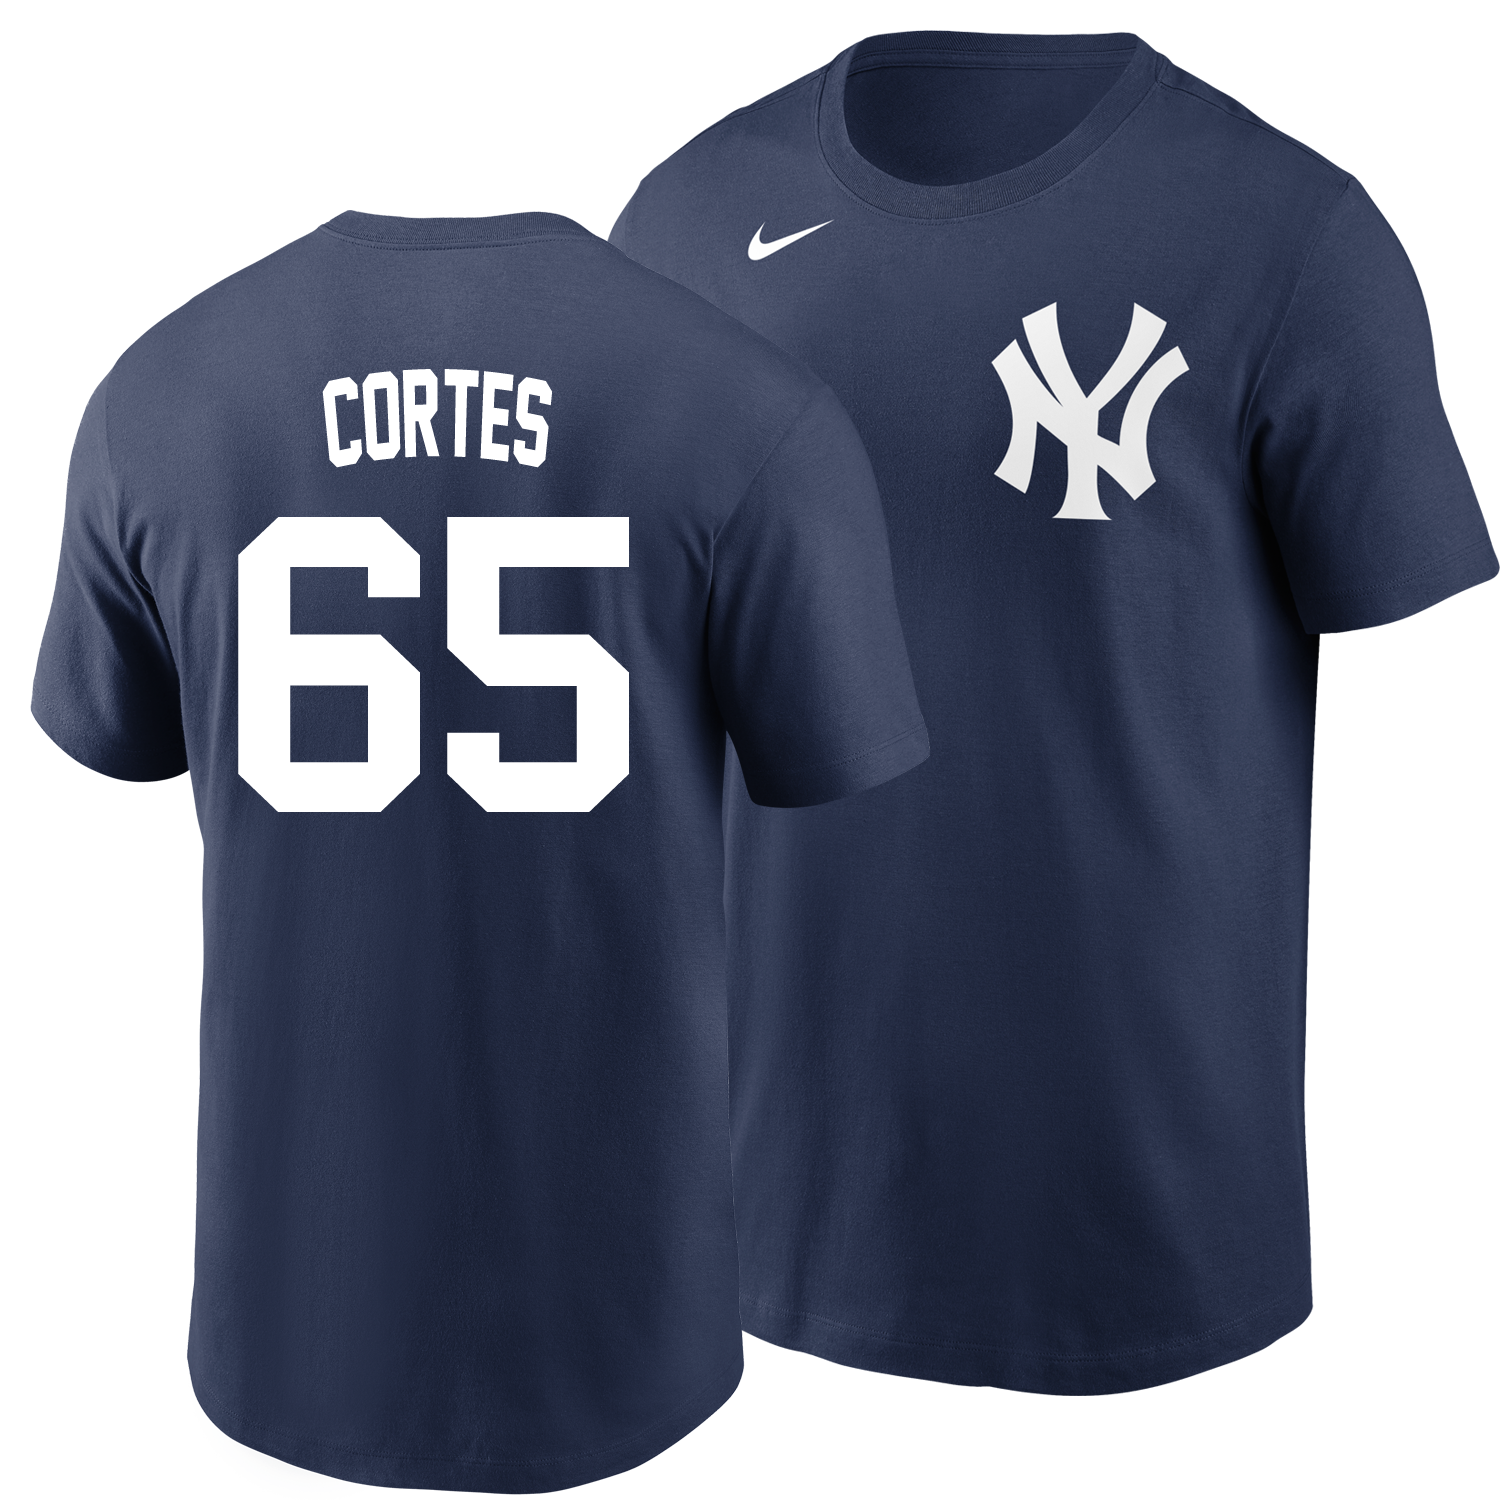 Nasty Nestor Shirt Nasty Nestor Cortes Jr Shirt New York 